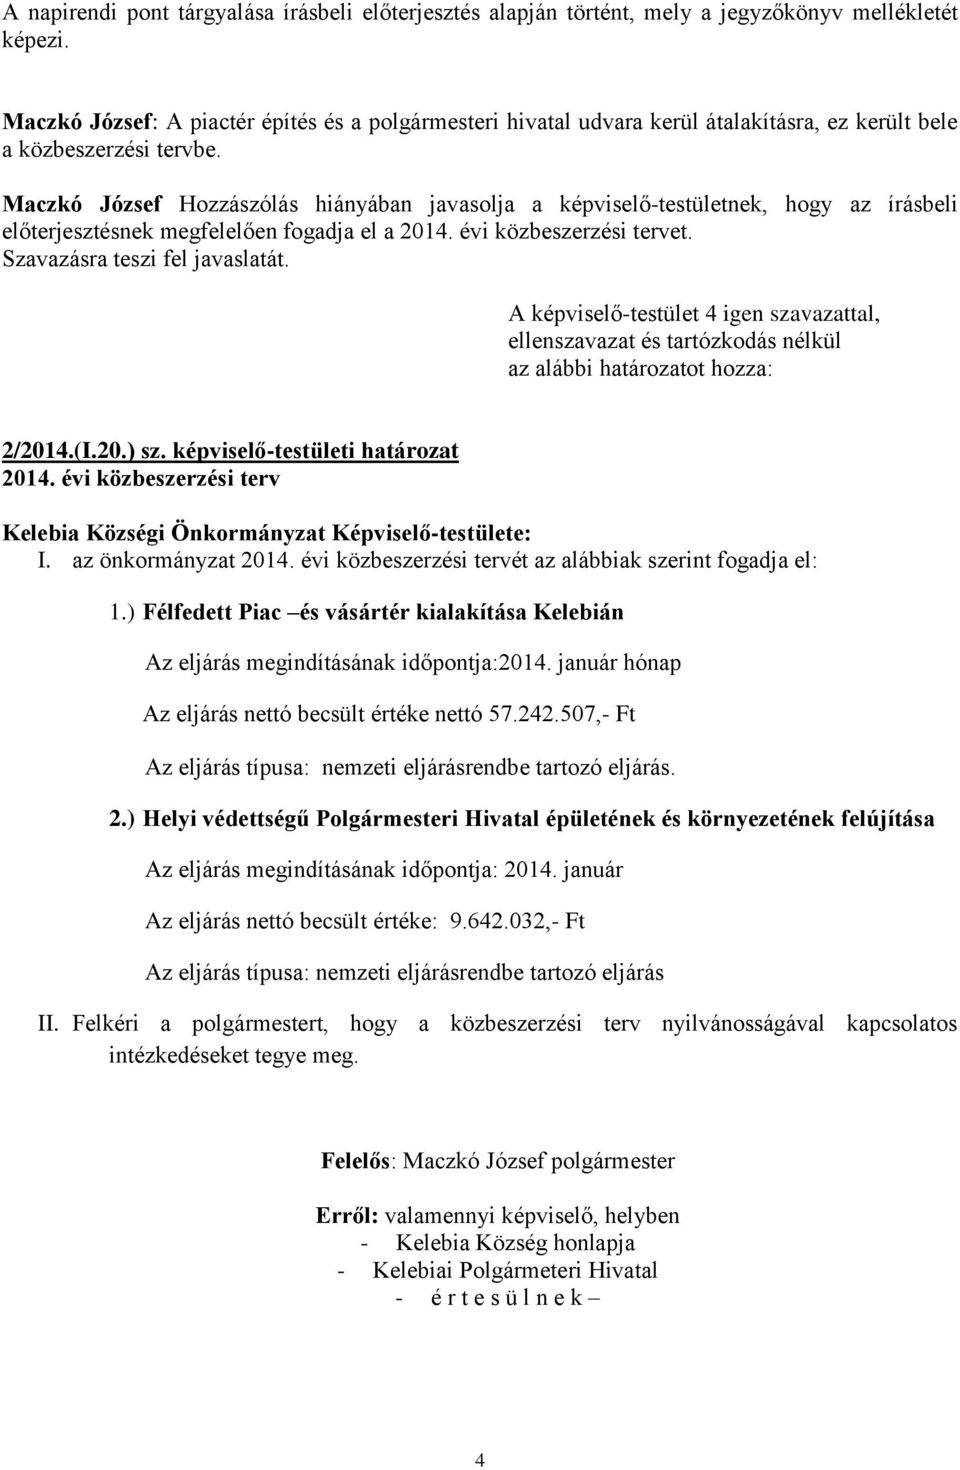 Maczkó József Hozzászólás hiányában javasolja a képviselő-testületnek, hogy az írásbeli előterjesztésnek megfelelően fogadja el a 2014. évi közbeszerzési tervet. 2/2014.(I.20.) sz.